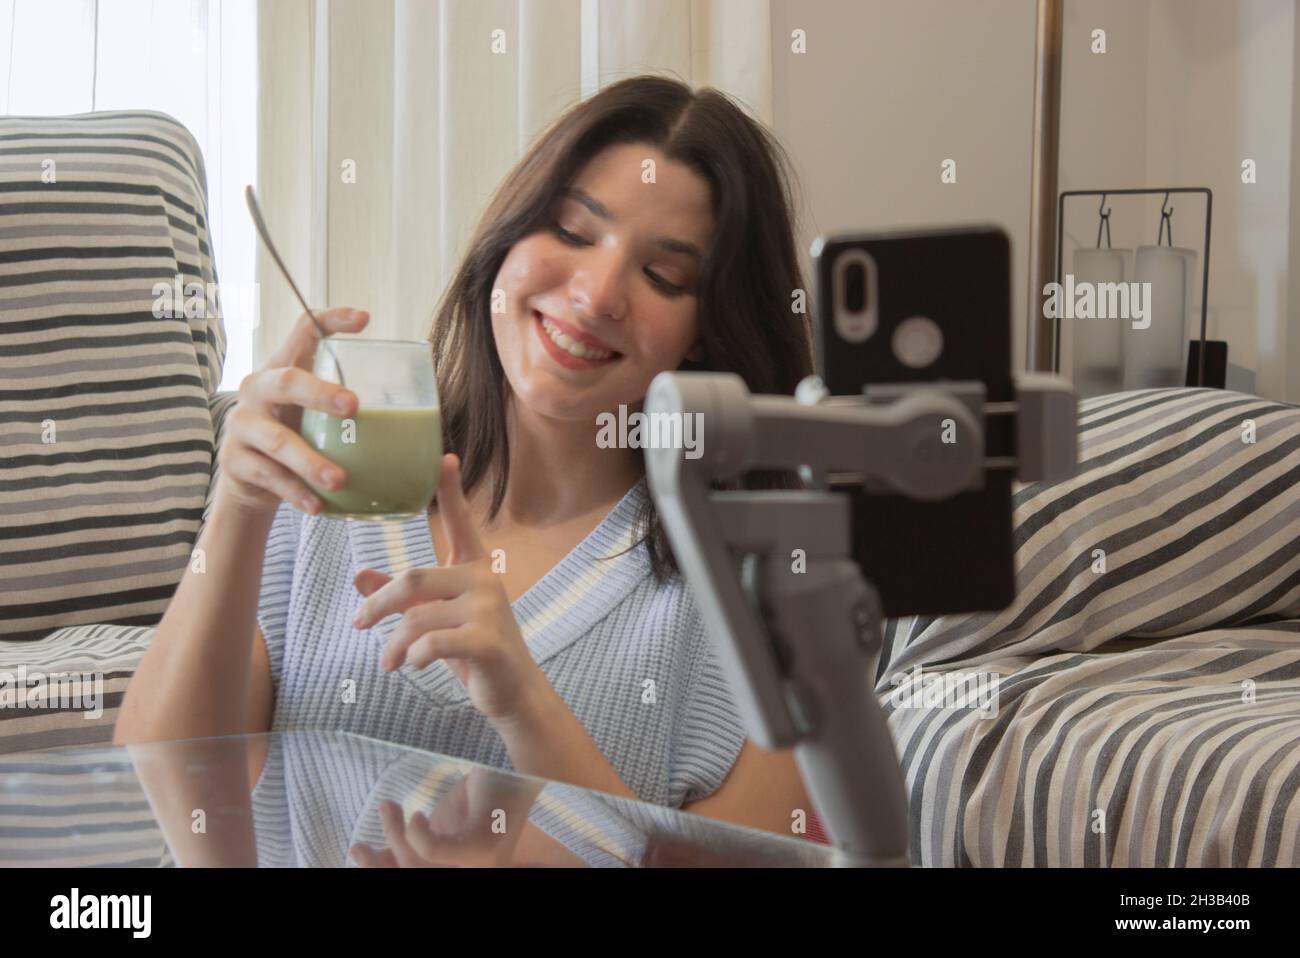 Ragazza blogger filma video online da condividere sui suoi social network parlando con i seguaci circa i benefici del tè matcha. Concetto di benessere. Foto Stock